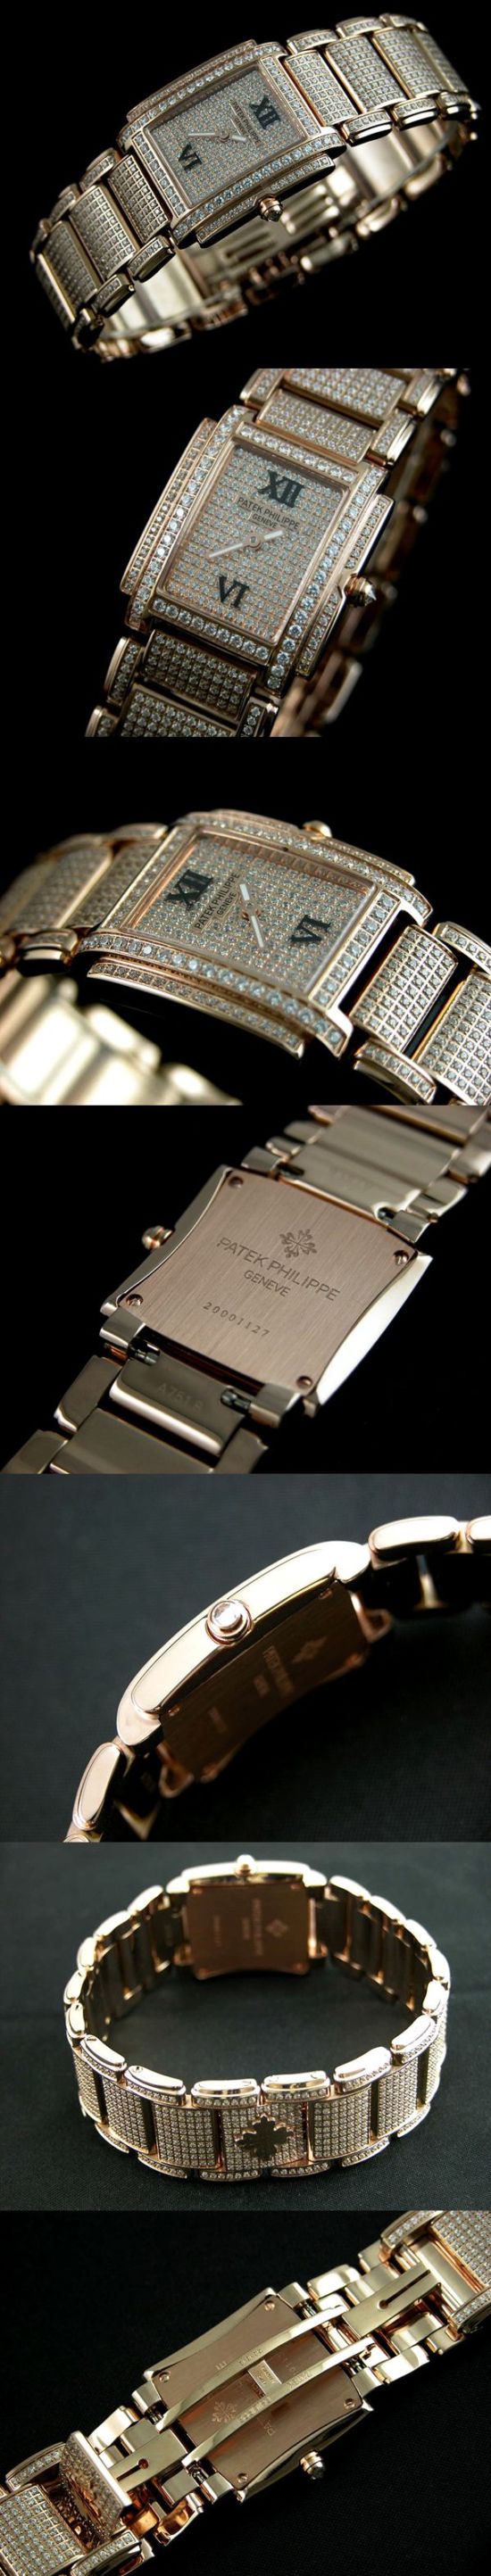 おしゃれなブランド時計がパテックフィリップ-PATEK PHILIPPE-4908-50G-パテックフィリップ-トゥエンティ～4-女性用を提供します.